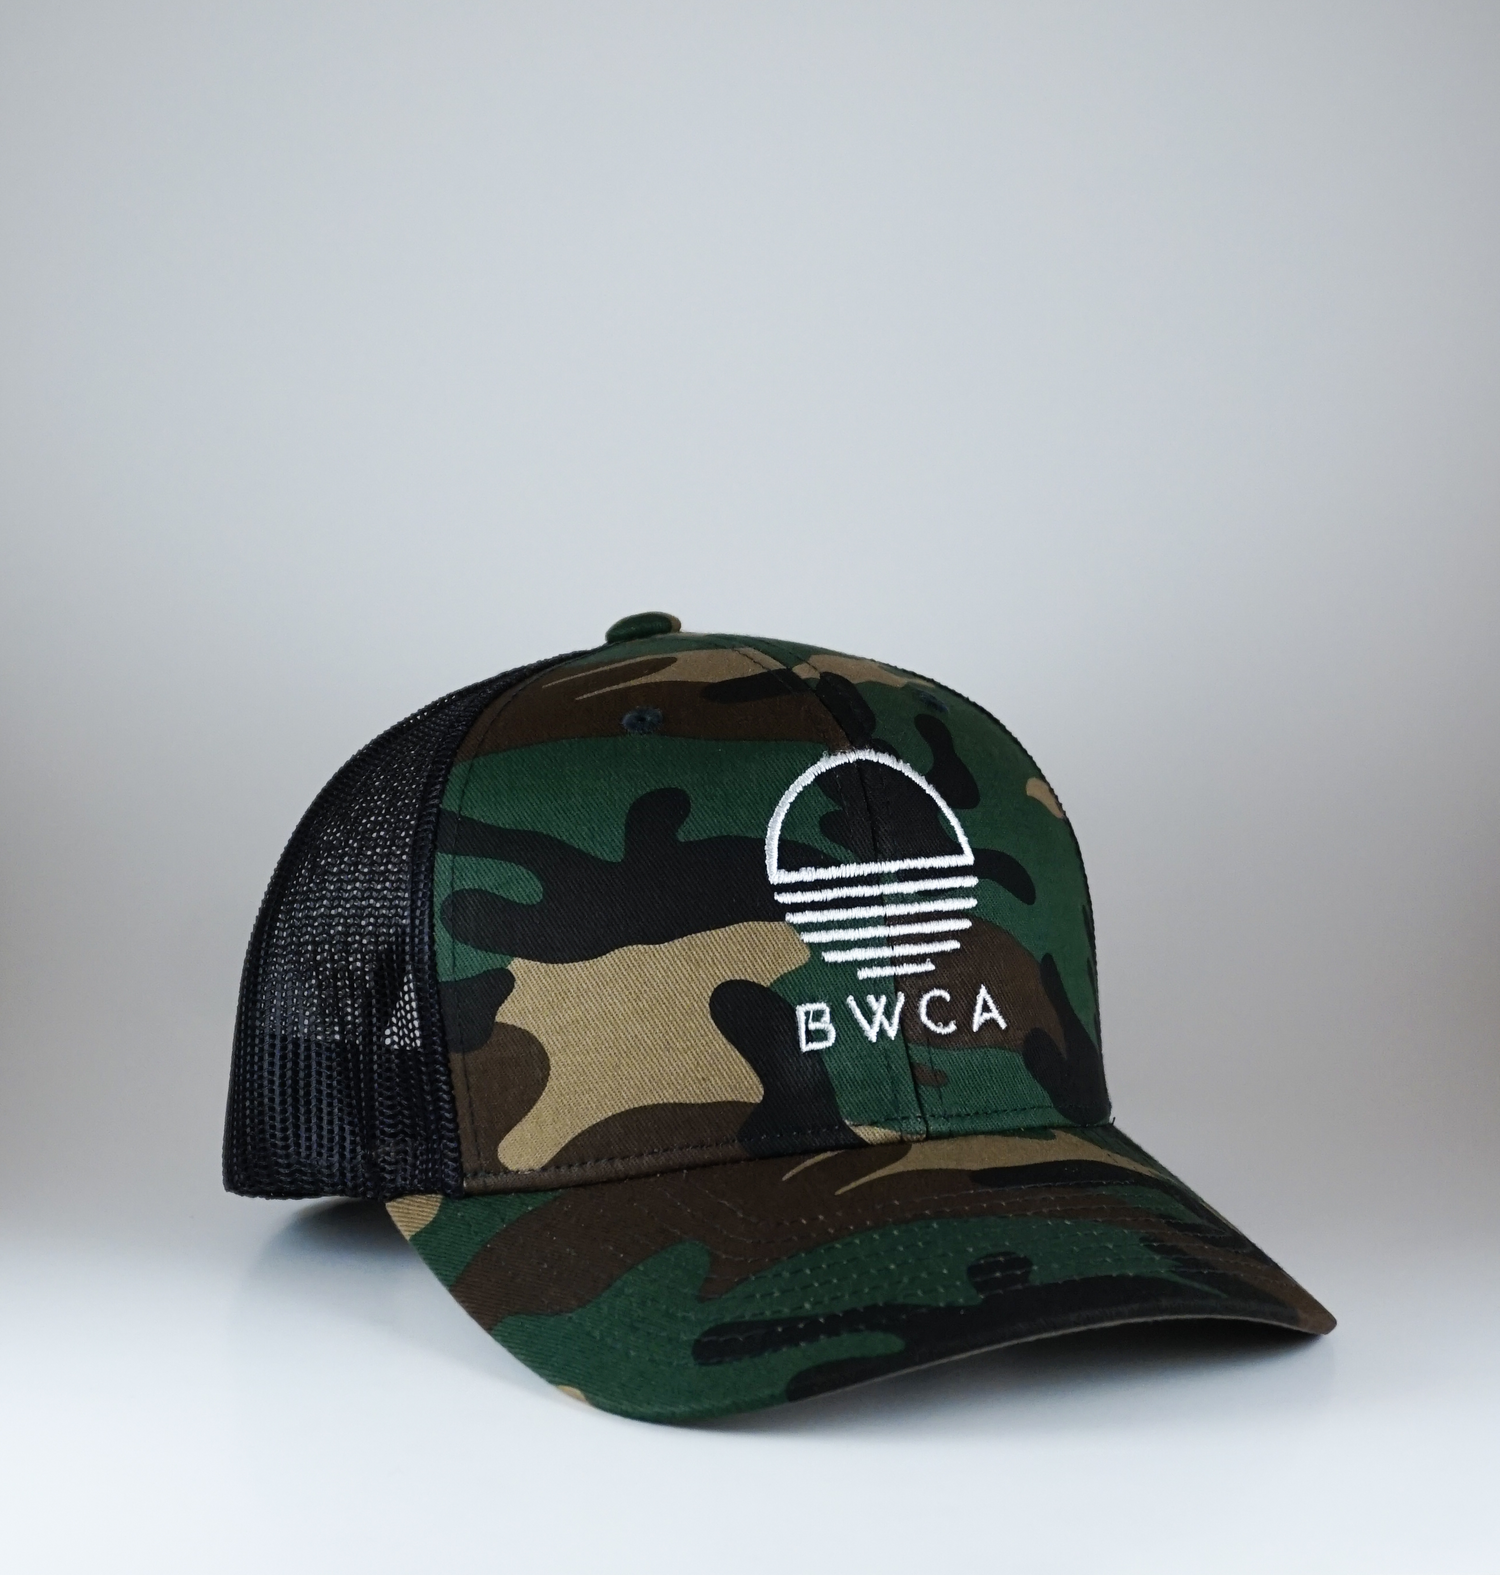 BWCA Sunset Caps